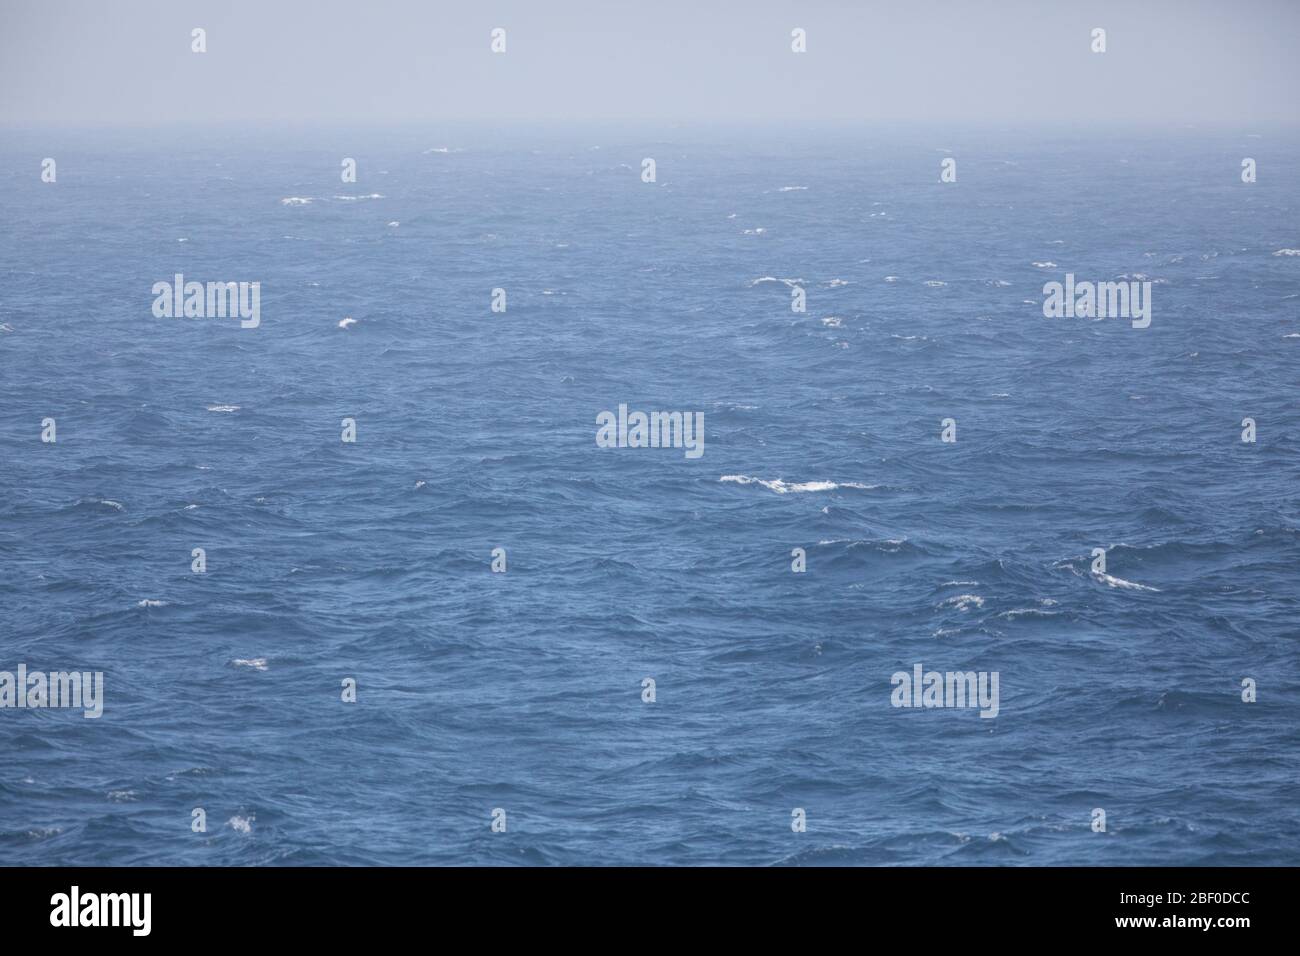 Diese nebelige Meereslandschaft ist in den Wellen des Indischen Ozeans im mächtigen Agulhas-Strom vor der Küste Südafrikas. Stockfoto